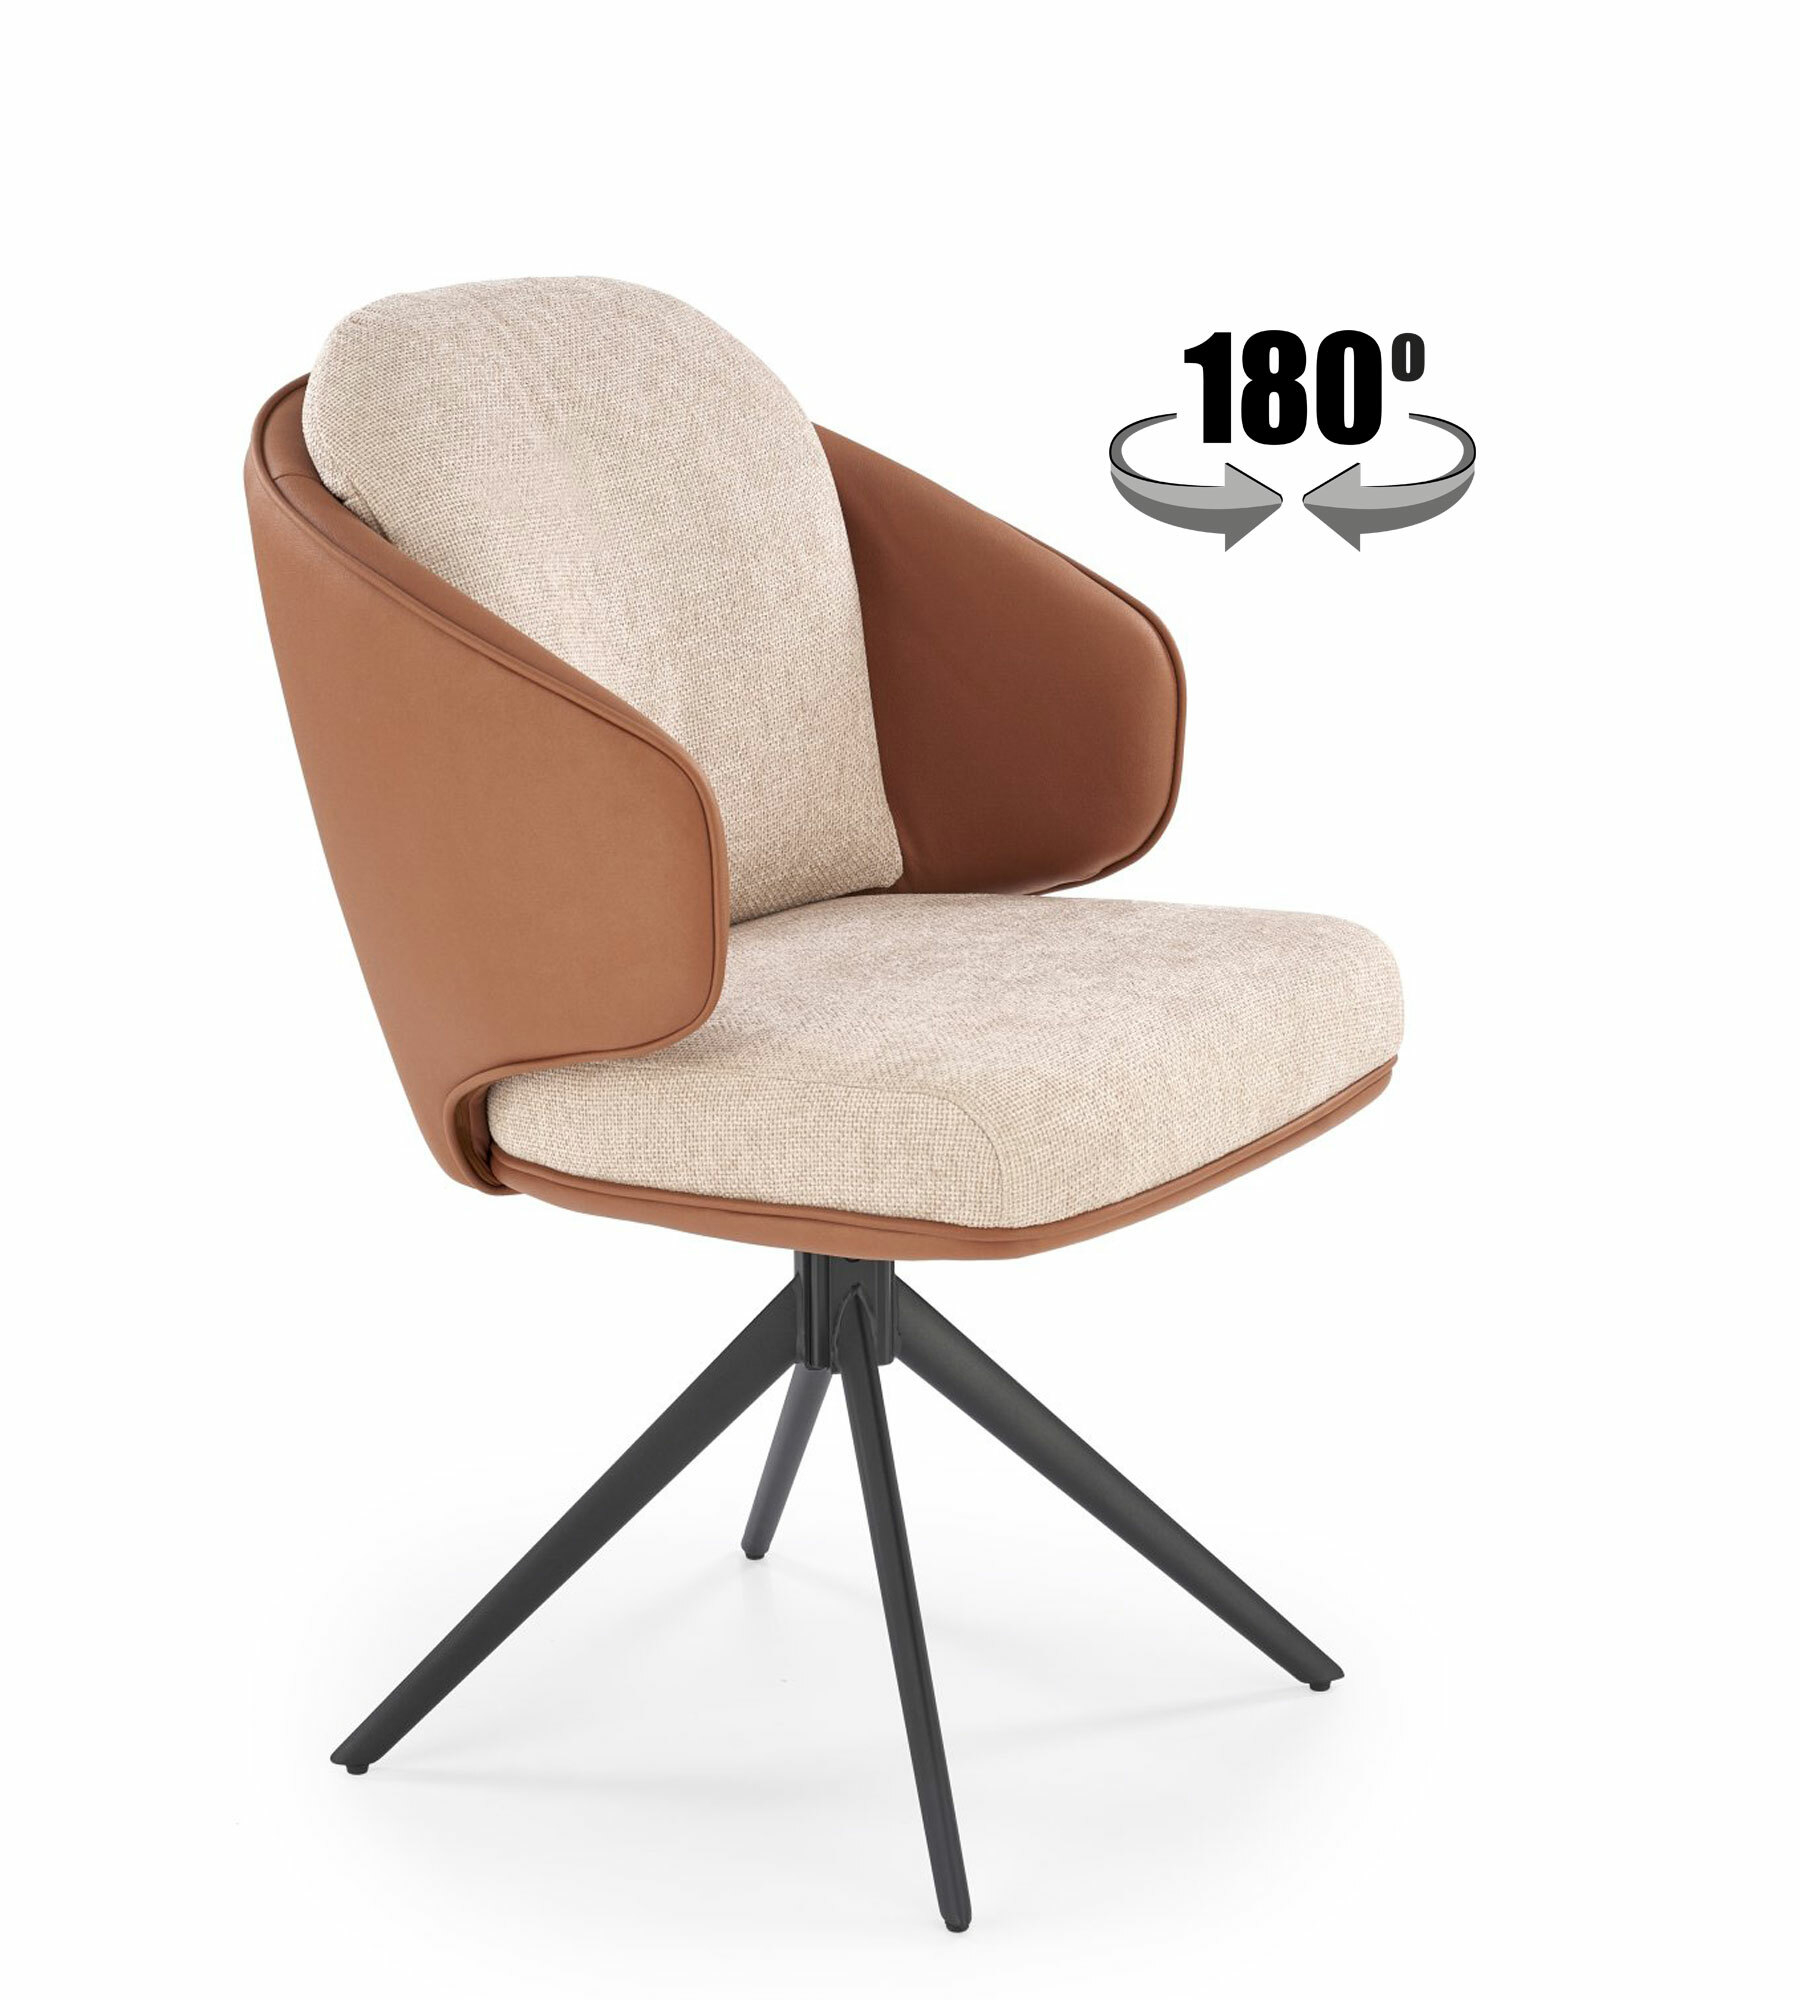 K554 krzesło brązowy / beżowy z funkcją obrotu